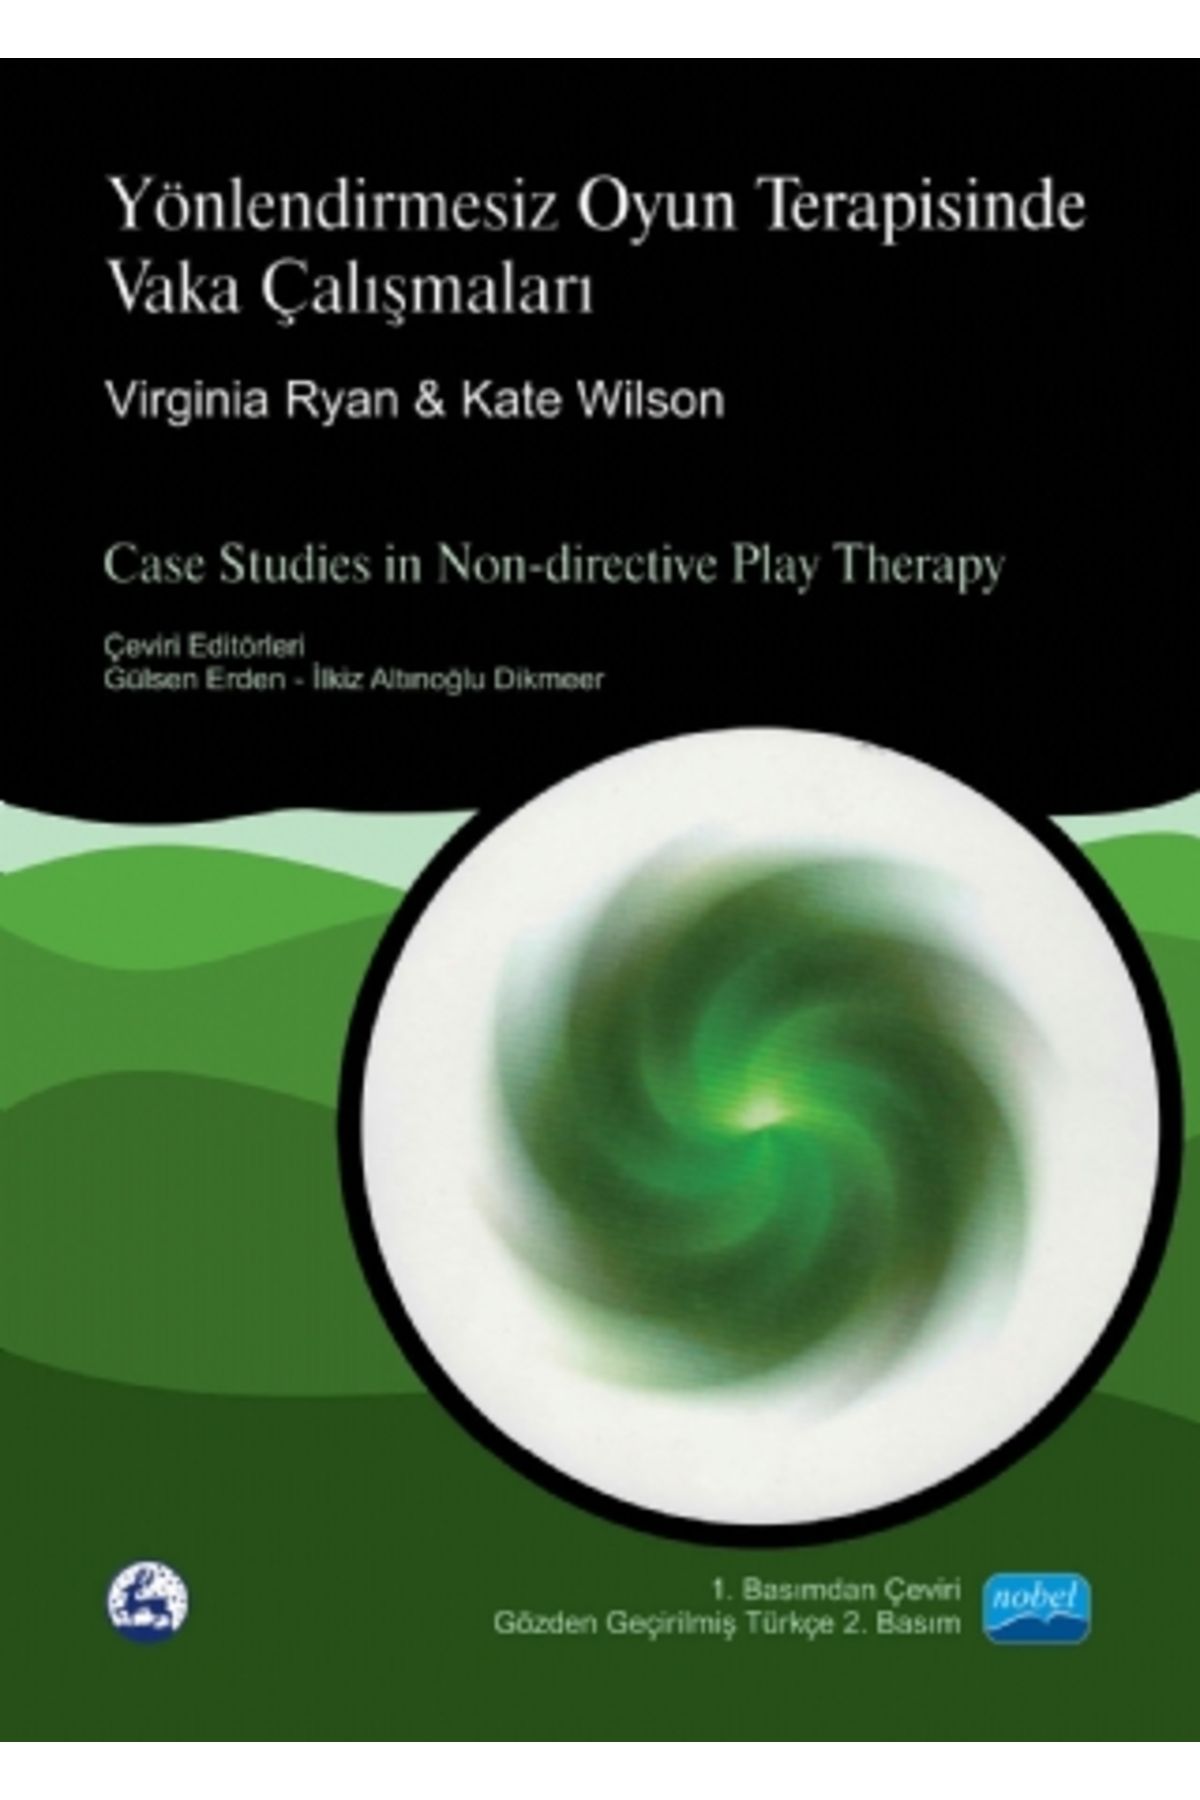 Nobel Akademik Yayıncılık Yönlendi?rmesi?z Oyun Terapi?si?nde Vaka Çalişmalari - Case Studies In Non-directive Play Therapy